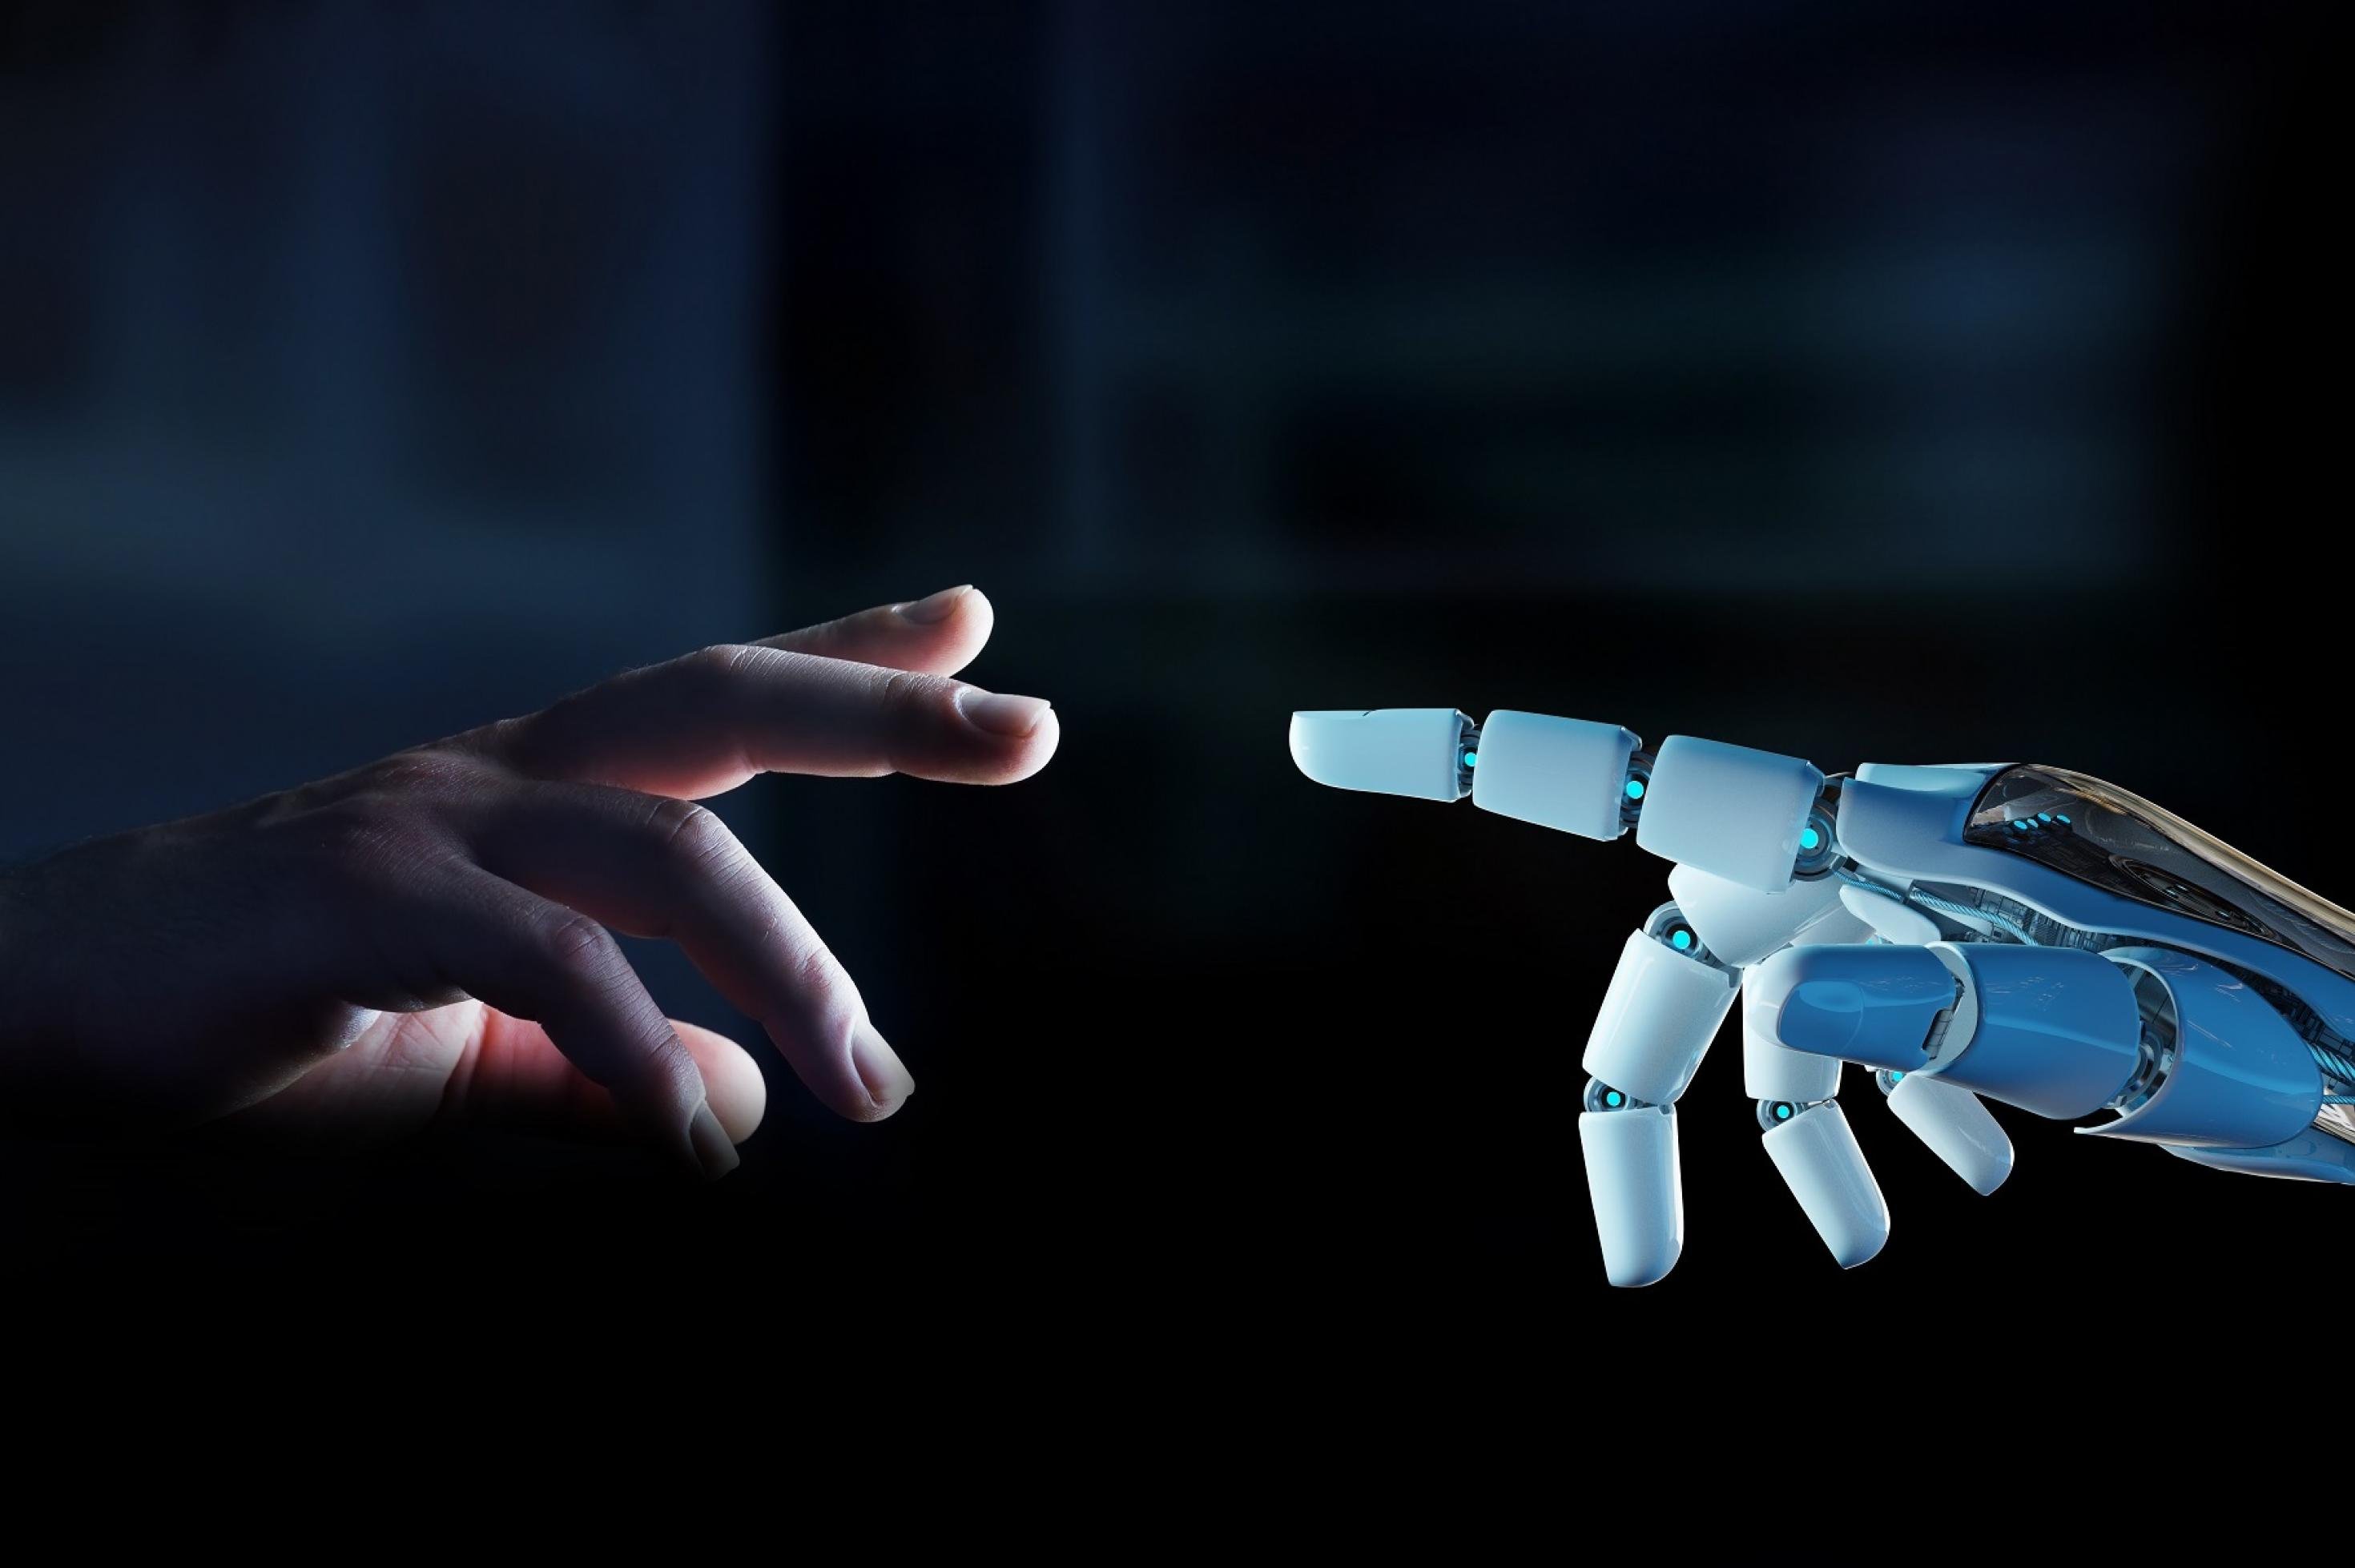 Ein weißer Roboterfinger ist kurz davor, einen menschlichen Finger zu berühren, der sich ihm vor dunklem Hintergrund entgegenstreckt.